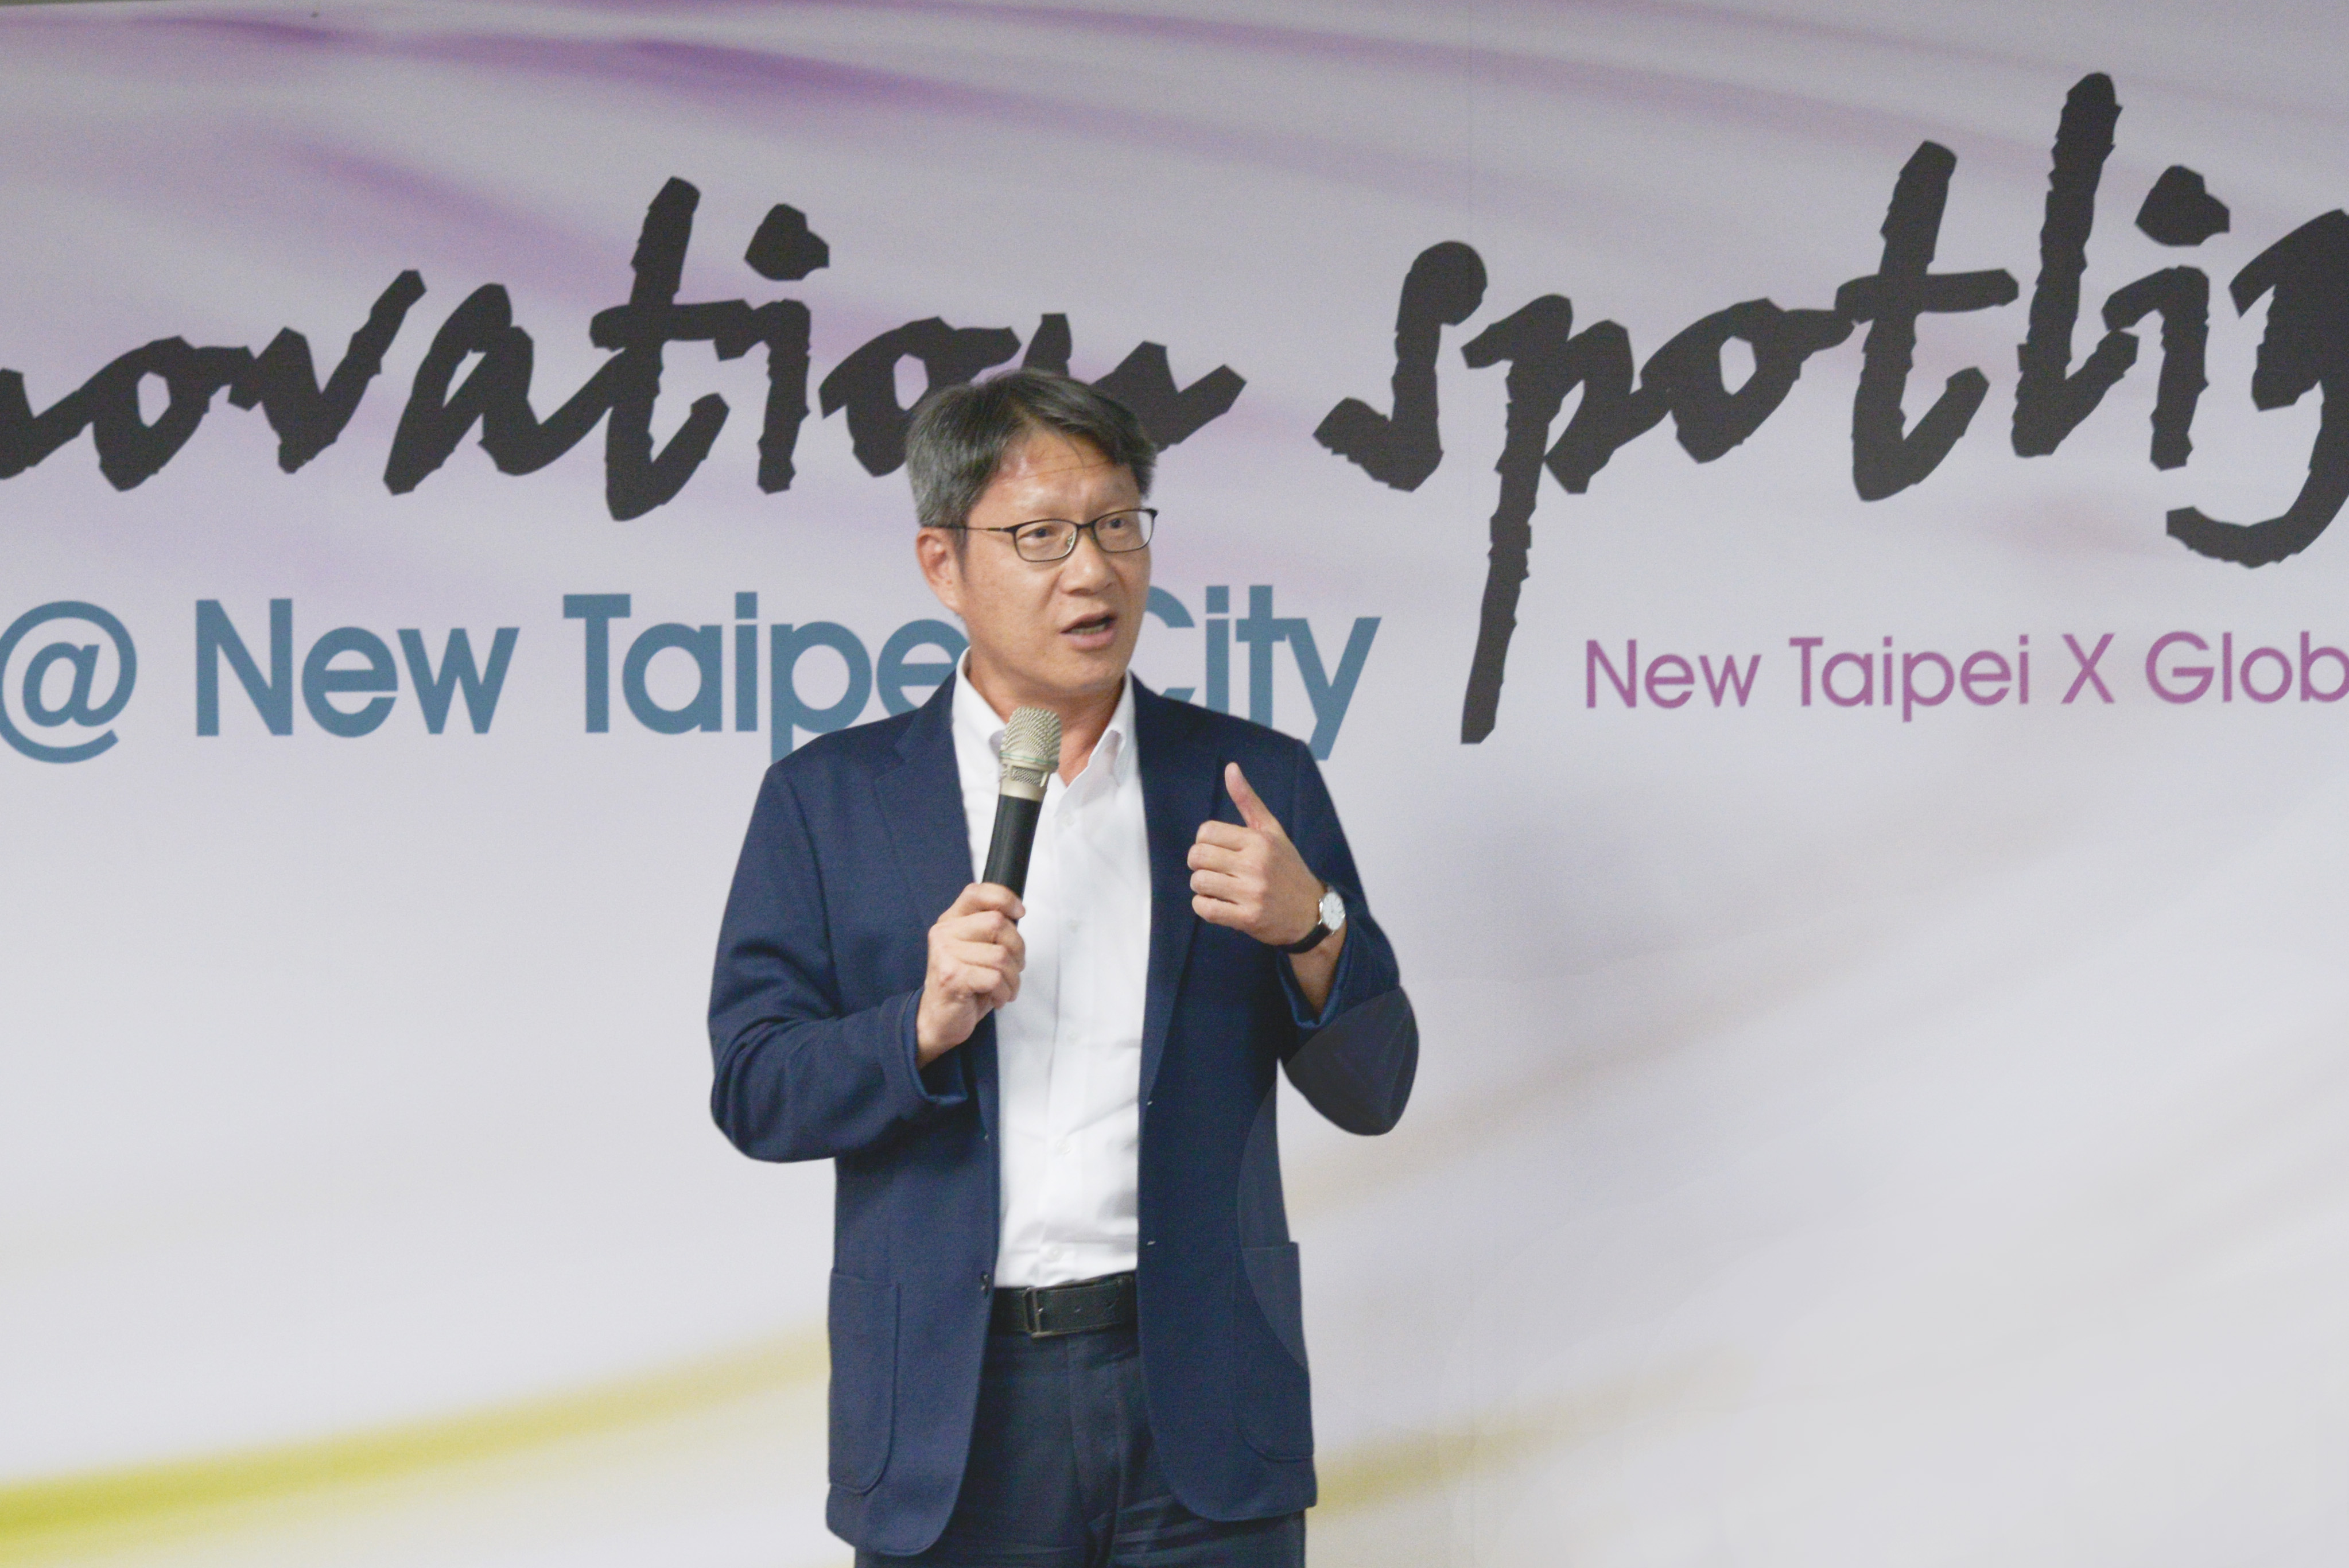 新北市副市長葉惠青出席「Innovation spotlight @ New Taipei City」國際交流活動